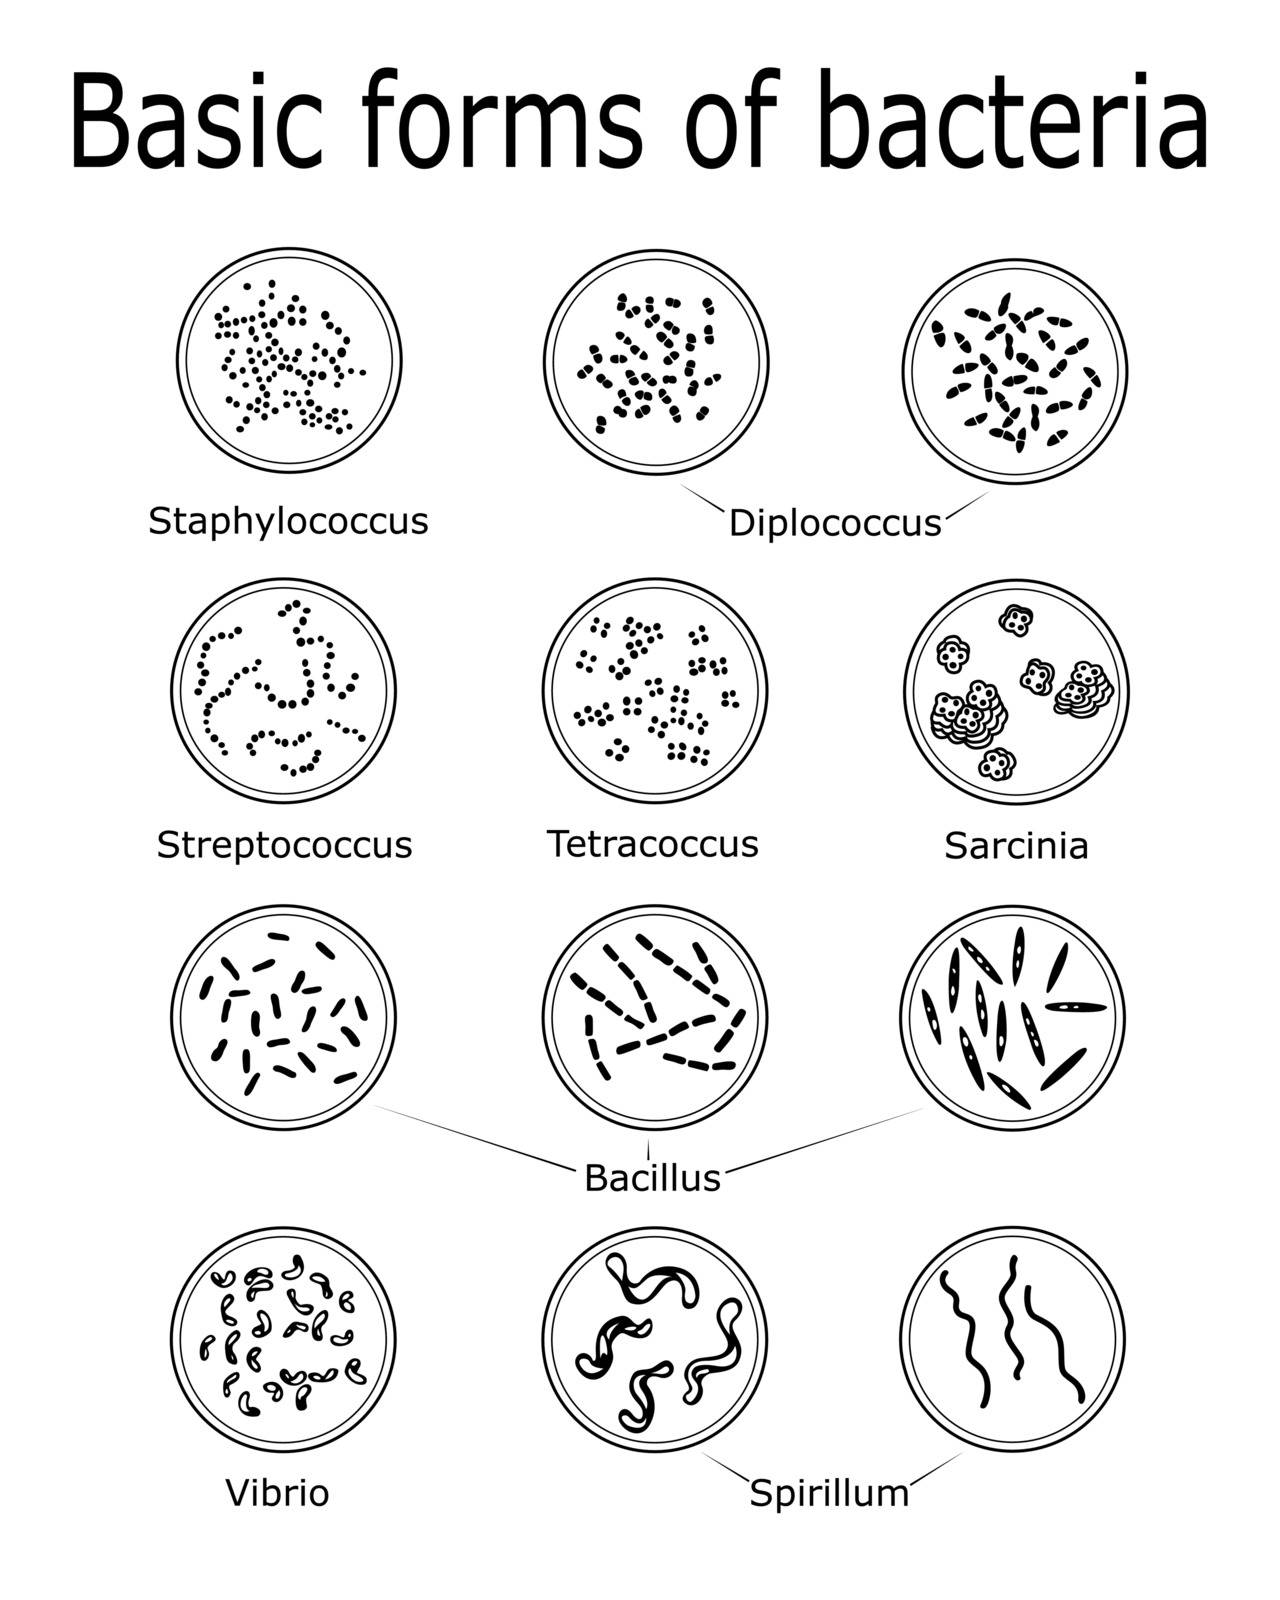 The basic forms of bacteria such as Monococcus, Diplococcus, Tetracoccus, Streptococcus, Staphylococcus, Bacillus, Vibrio, Spirillum, Sarcinia.